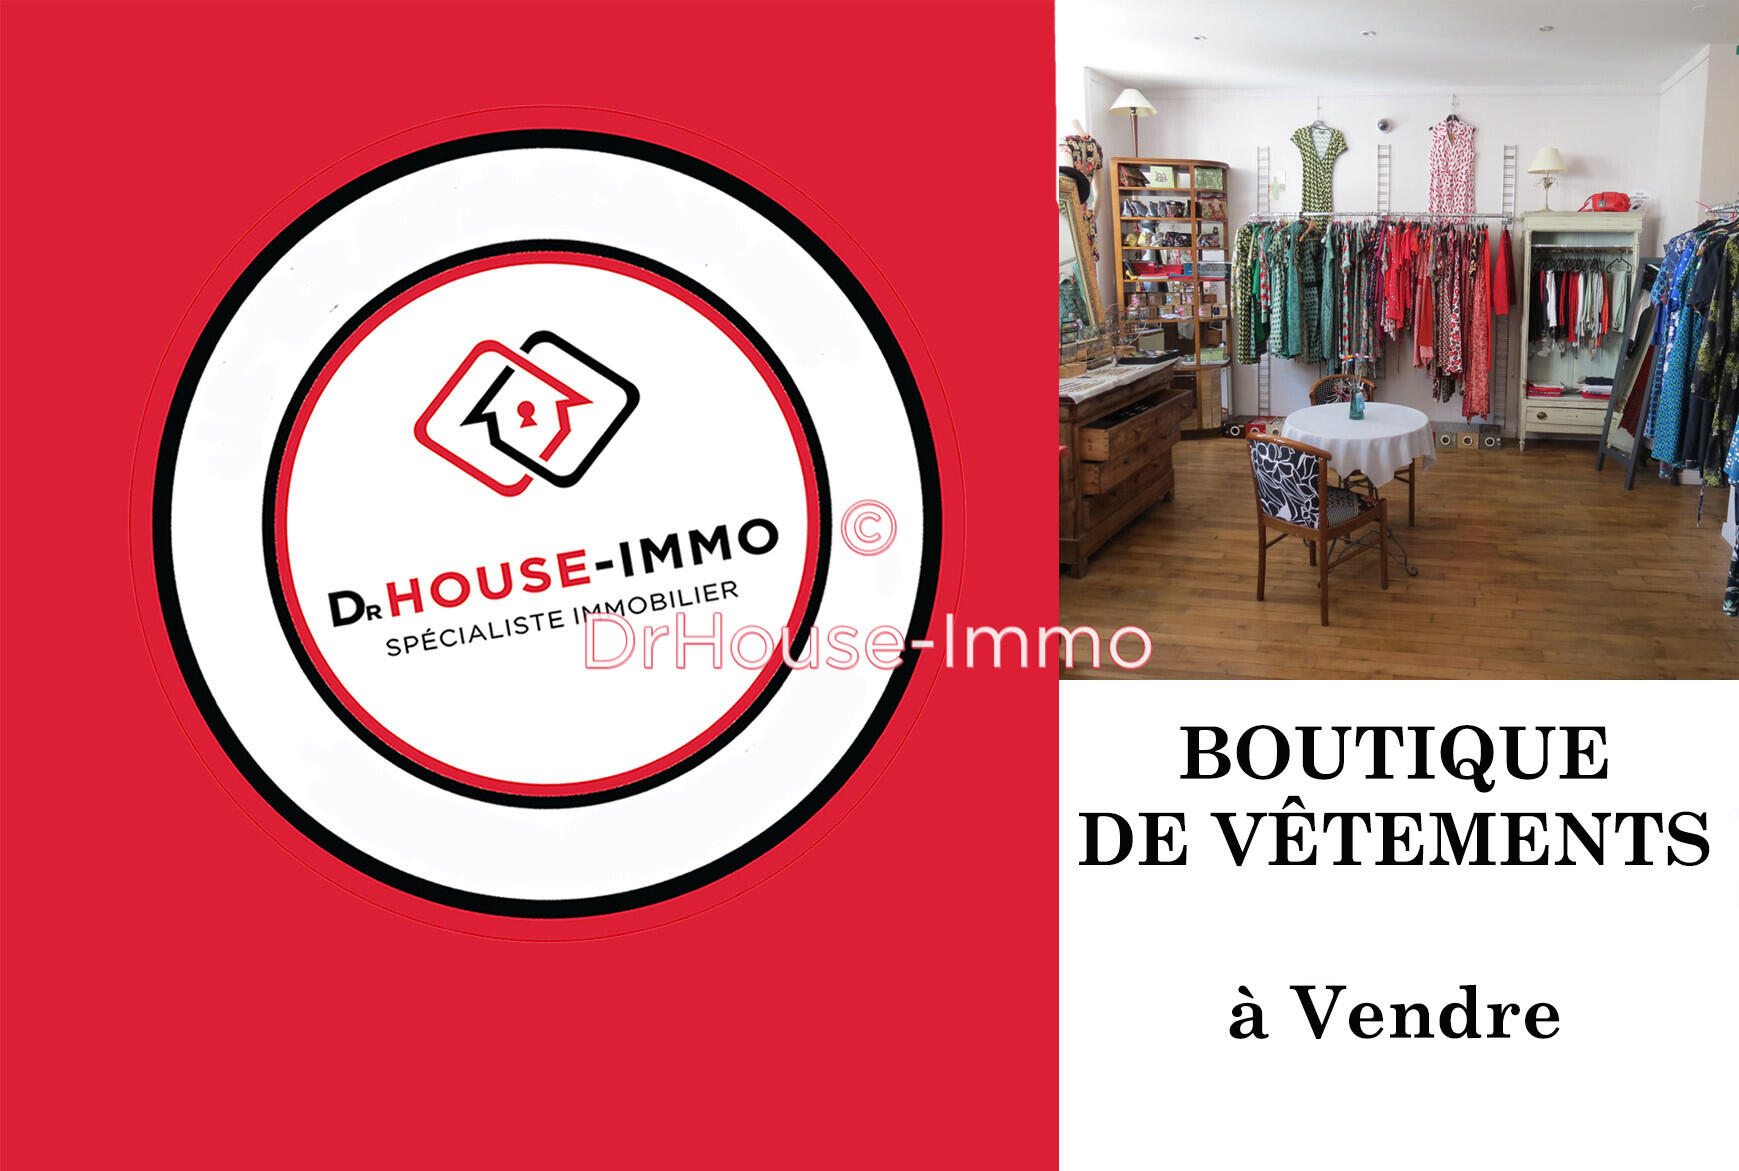 Vente boutique vêtements à Nantes quartier réputé